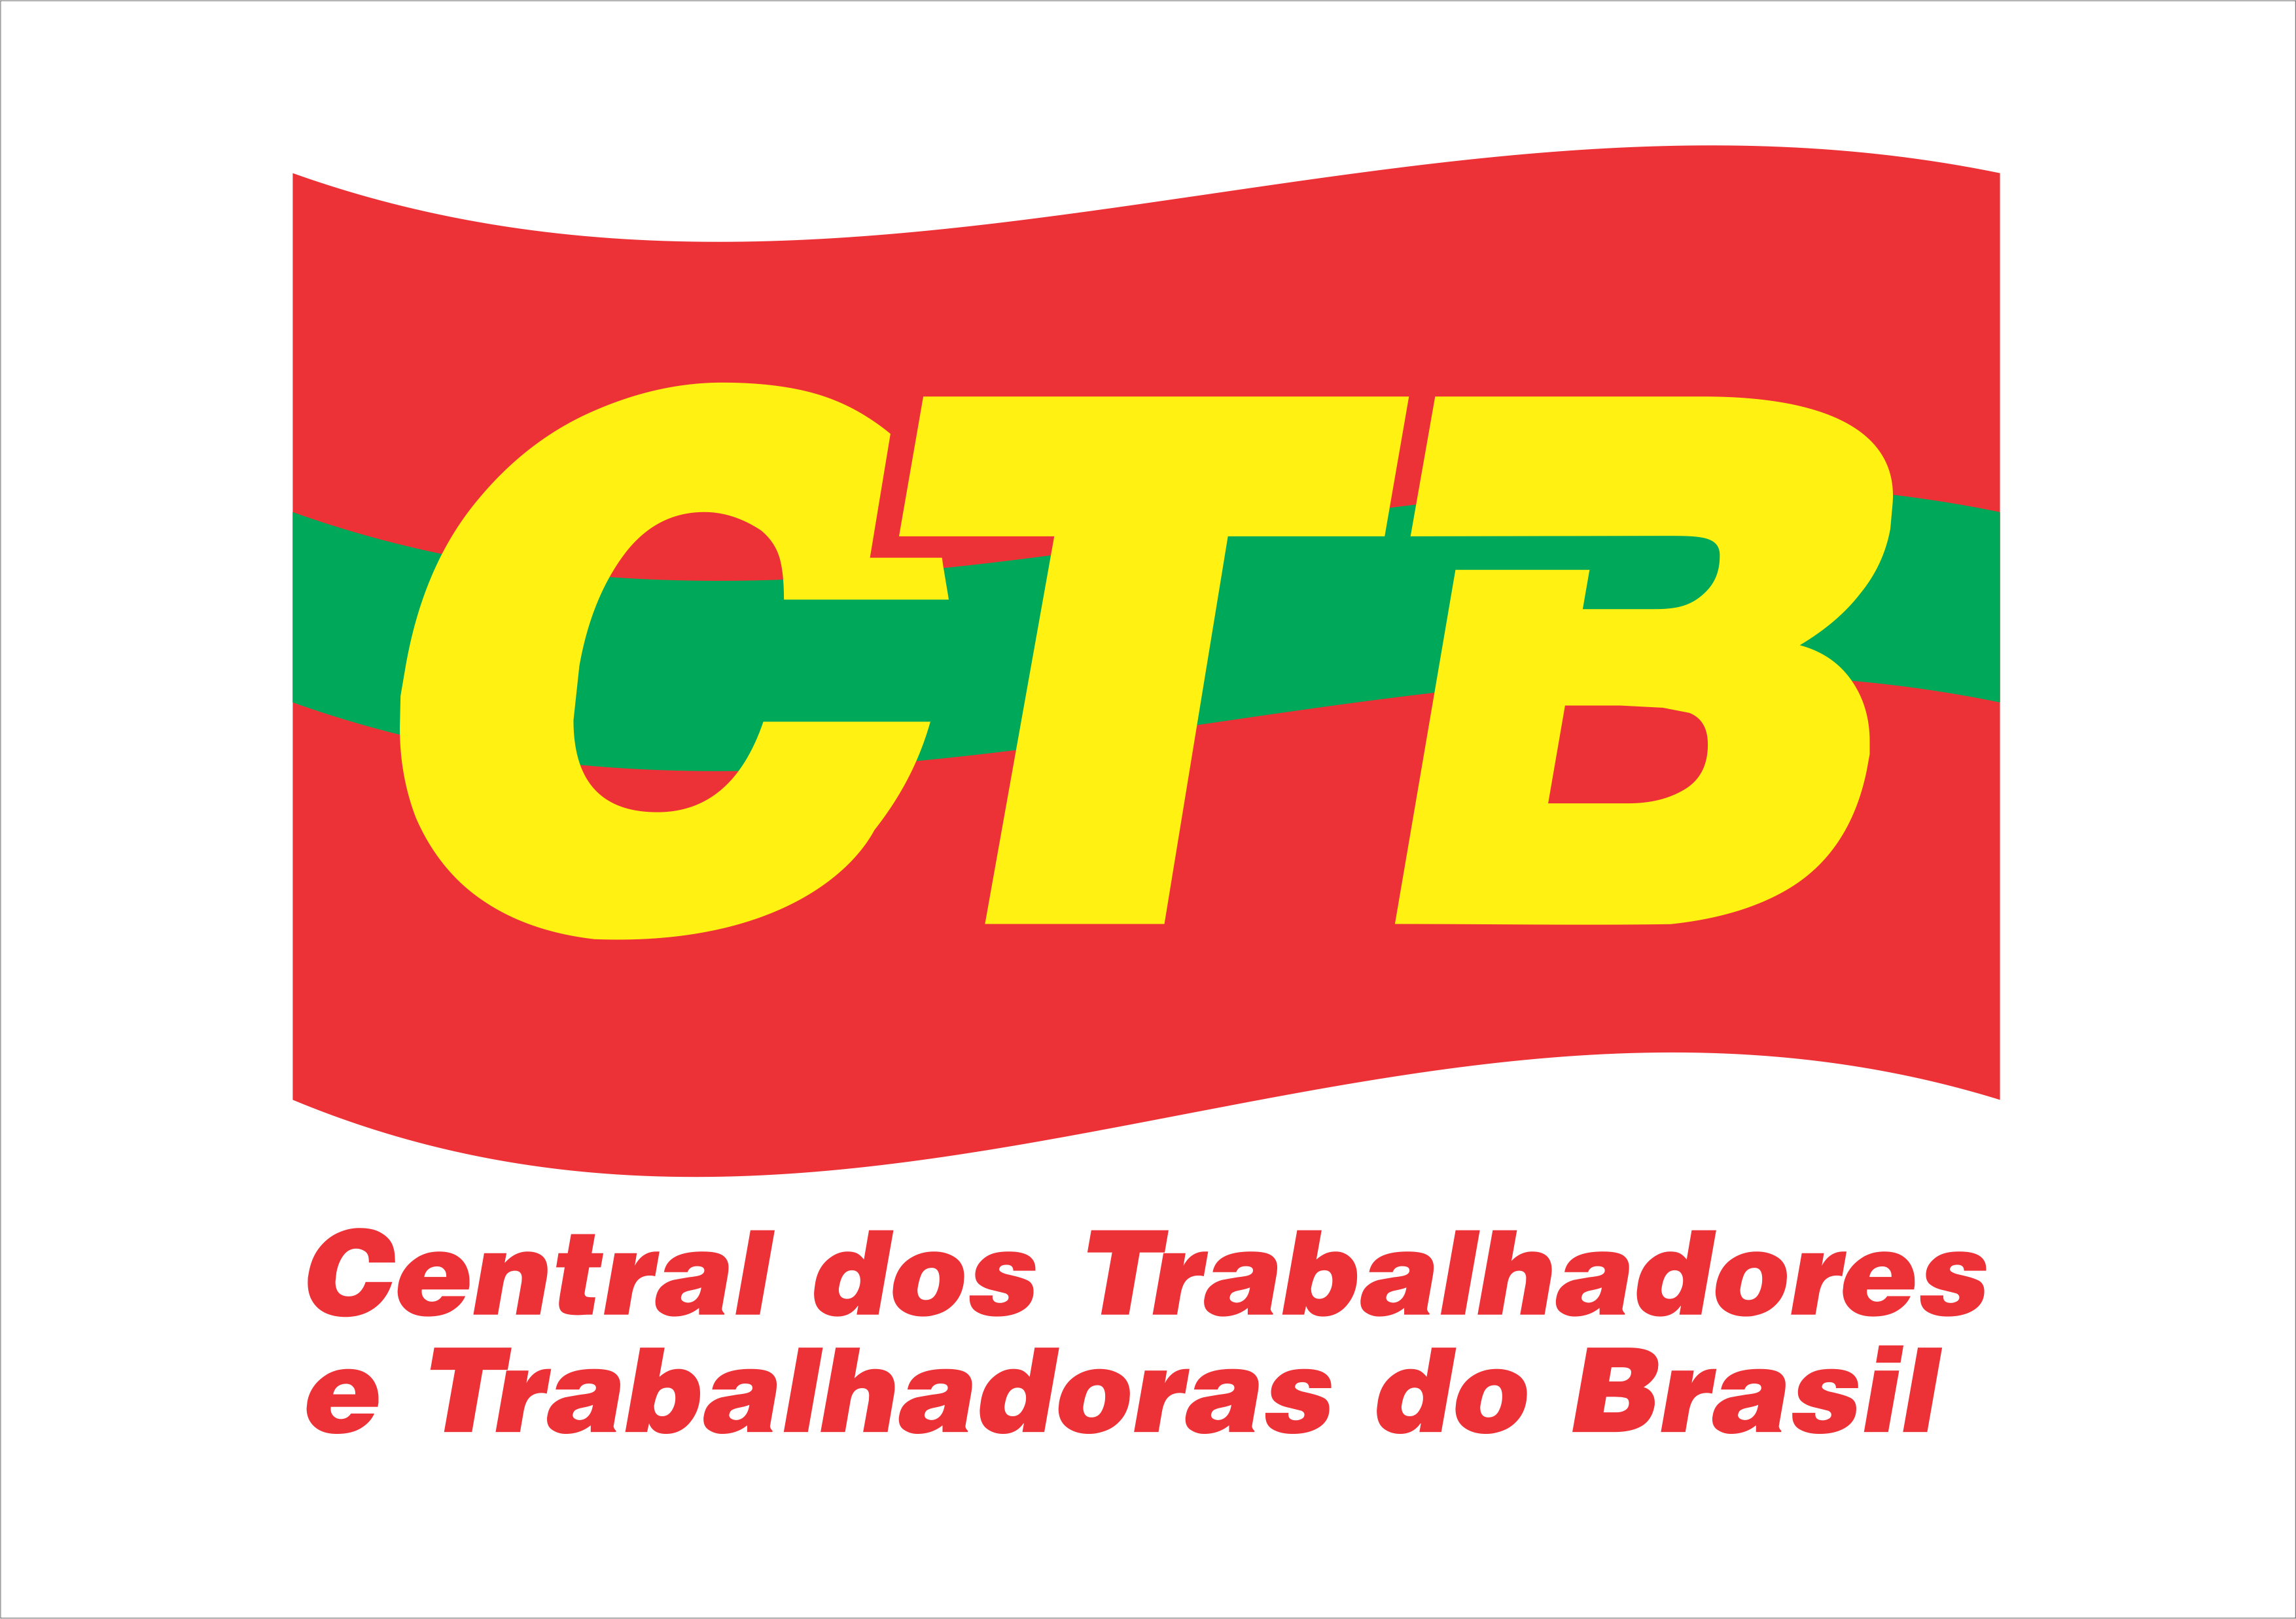 CTB emite nota em apoio à greve geral na Argentina